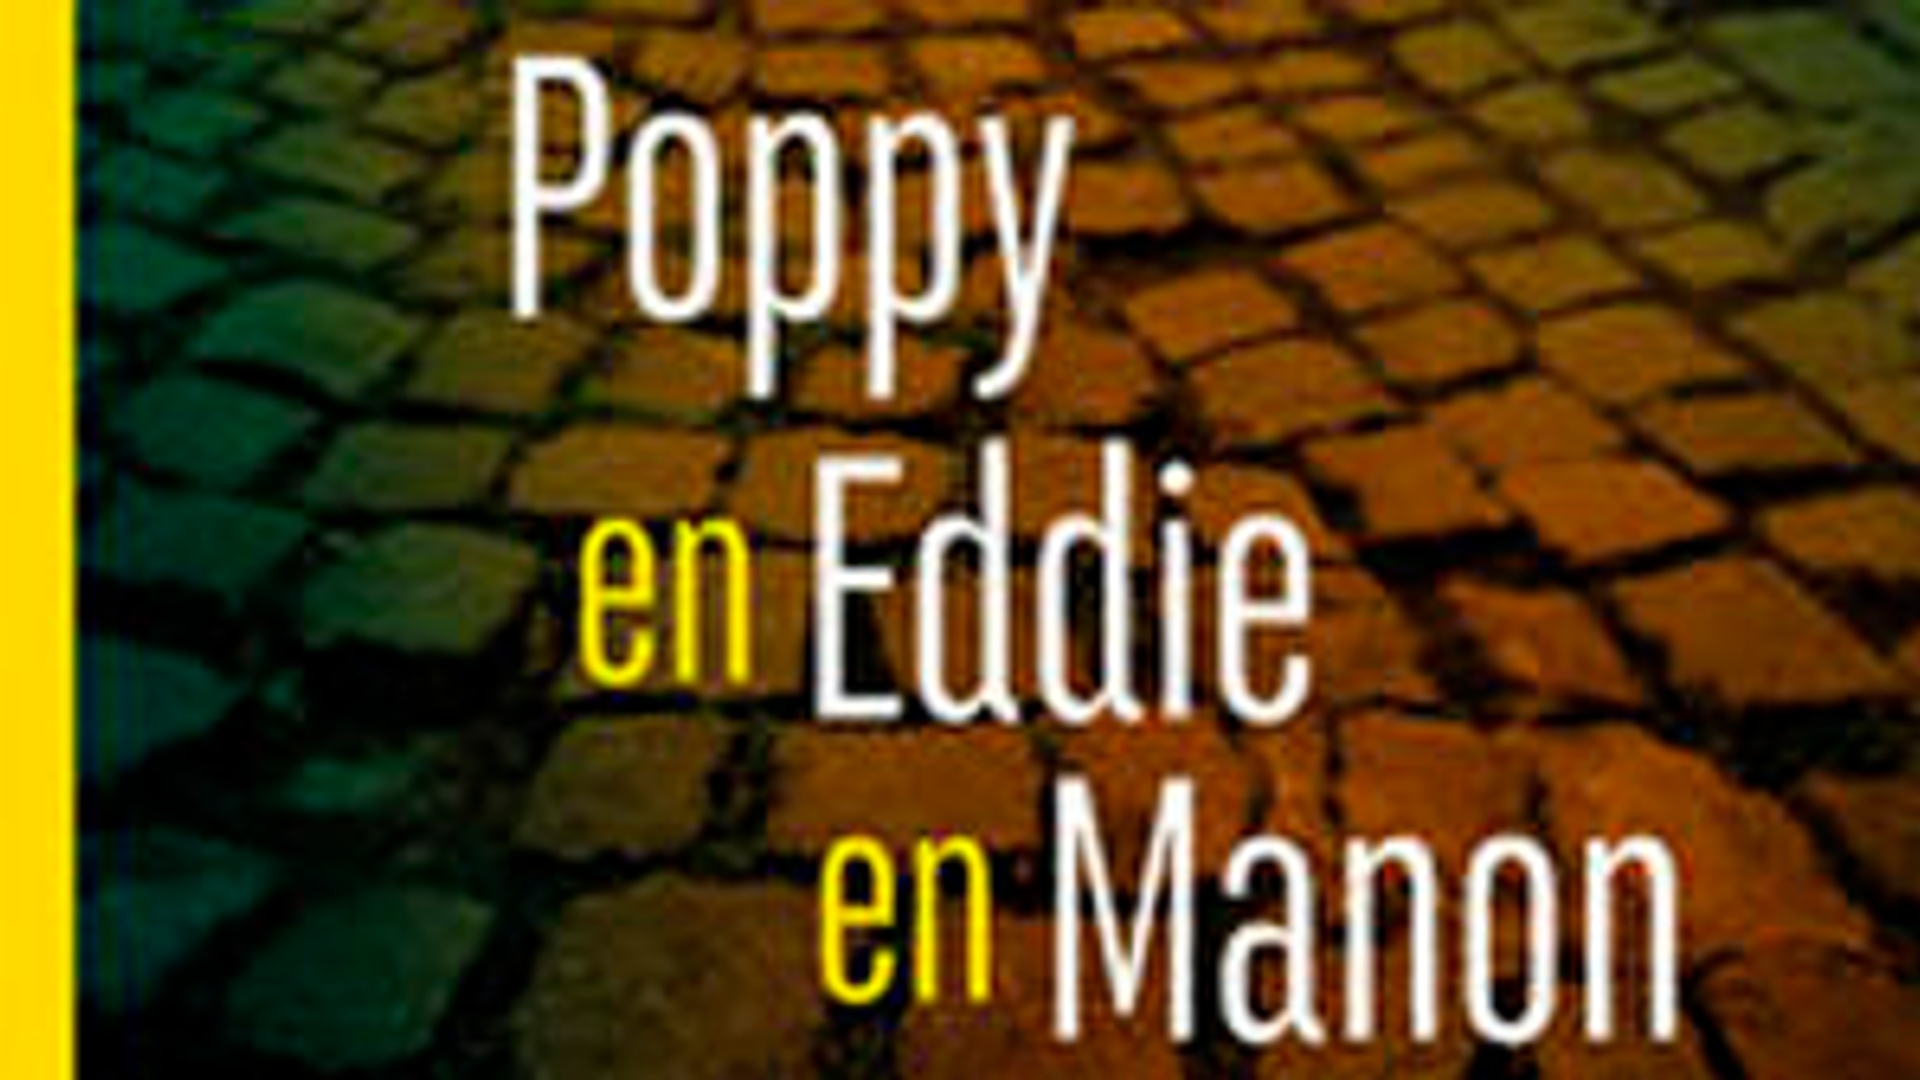 boek cover Poppy en Eddie en Manon